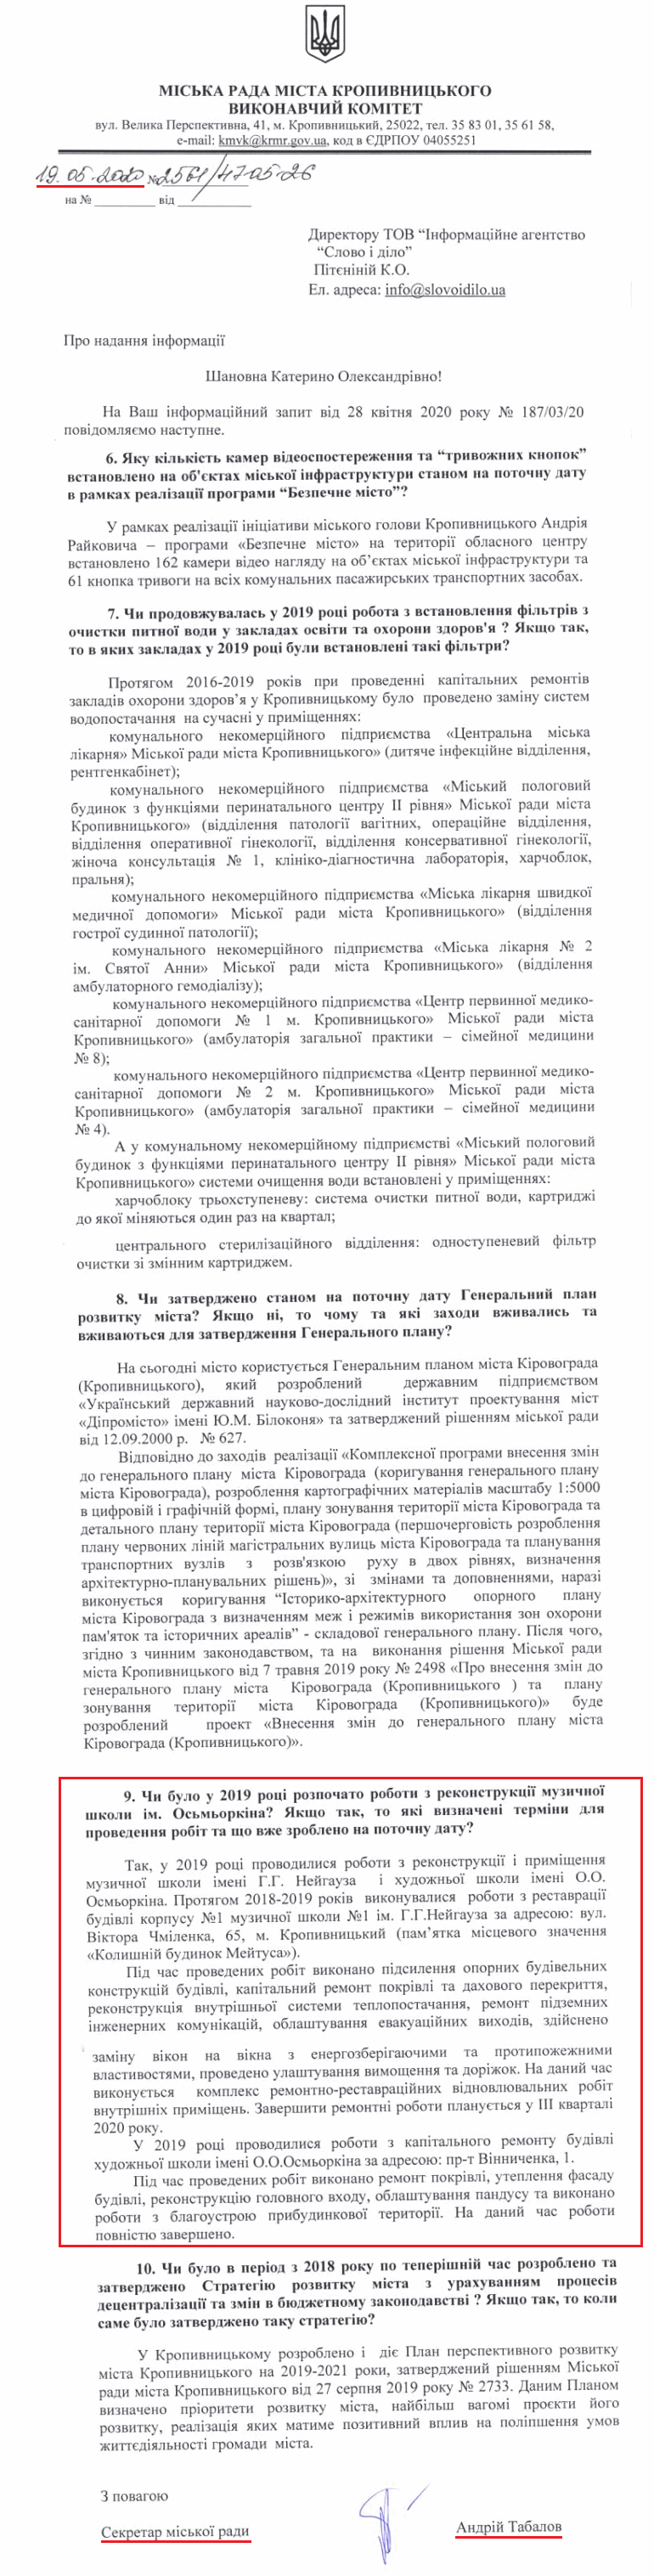 Лист секретаря міської ради А. Табалова